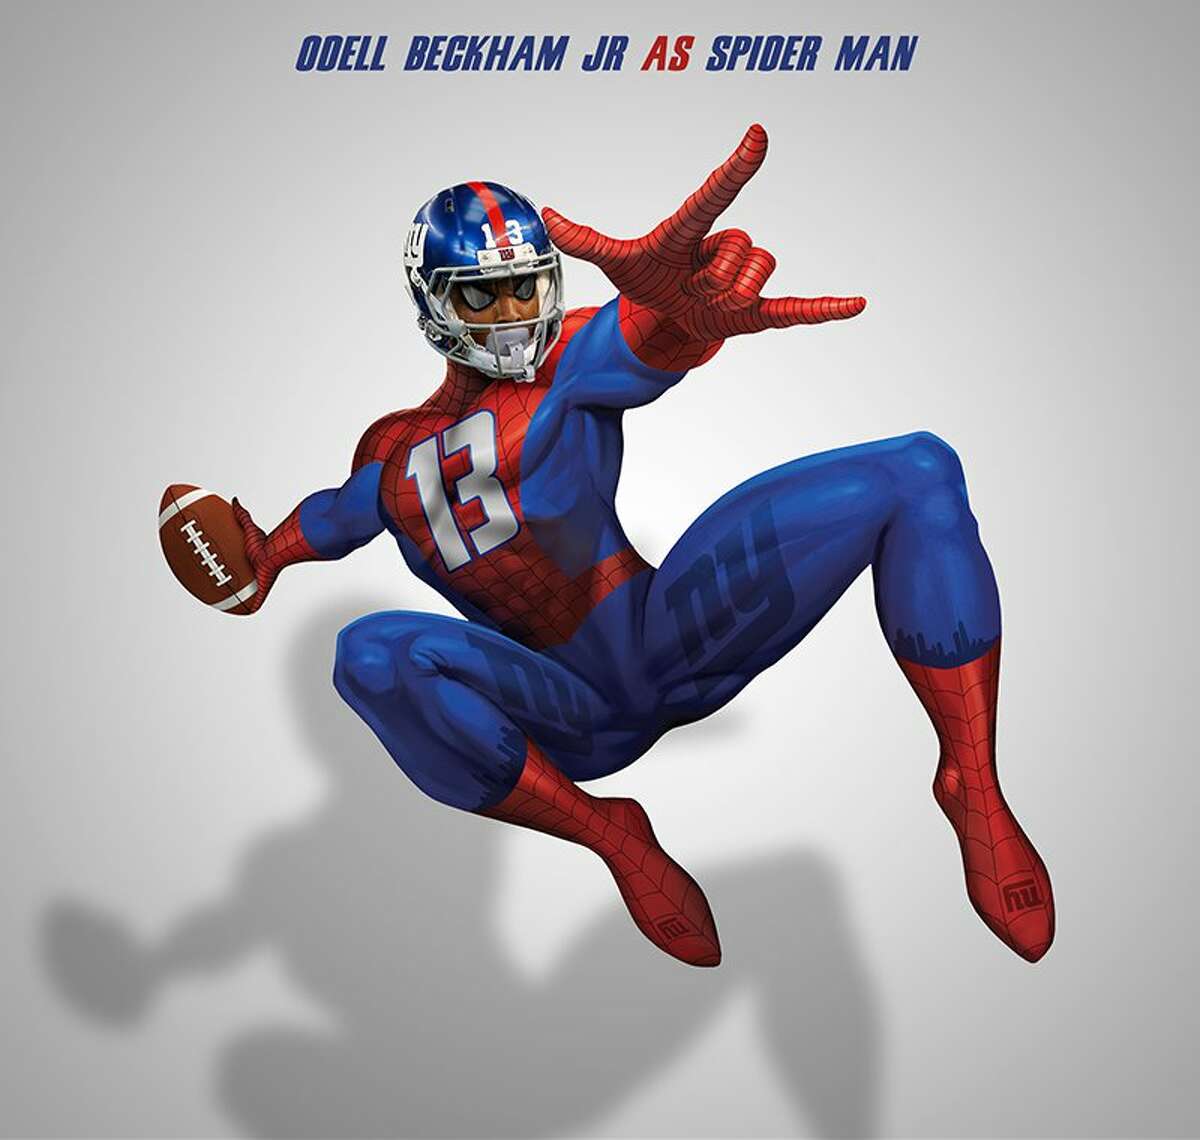 Odell Beckham Jr. as Spider Man